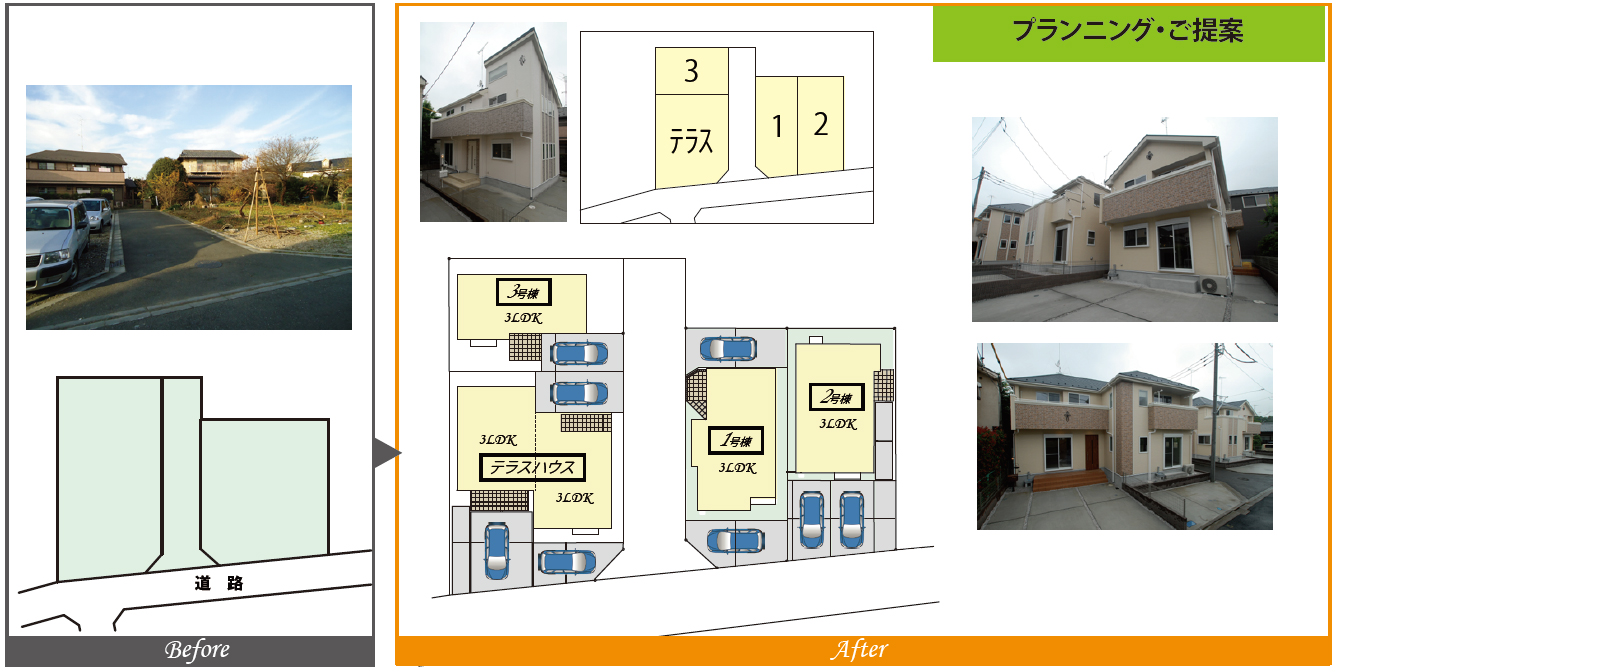 戸建賃貸+テラスハウスの複合計画